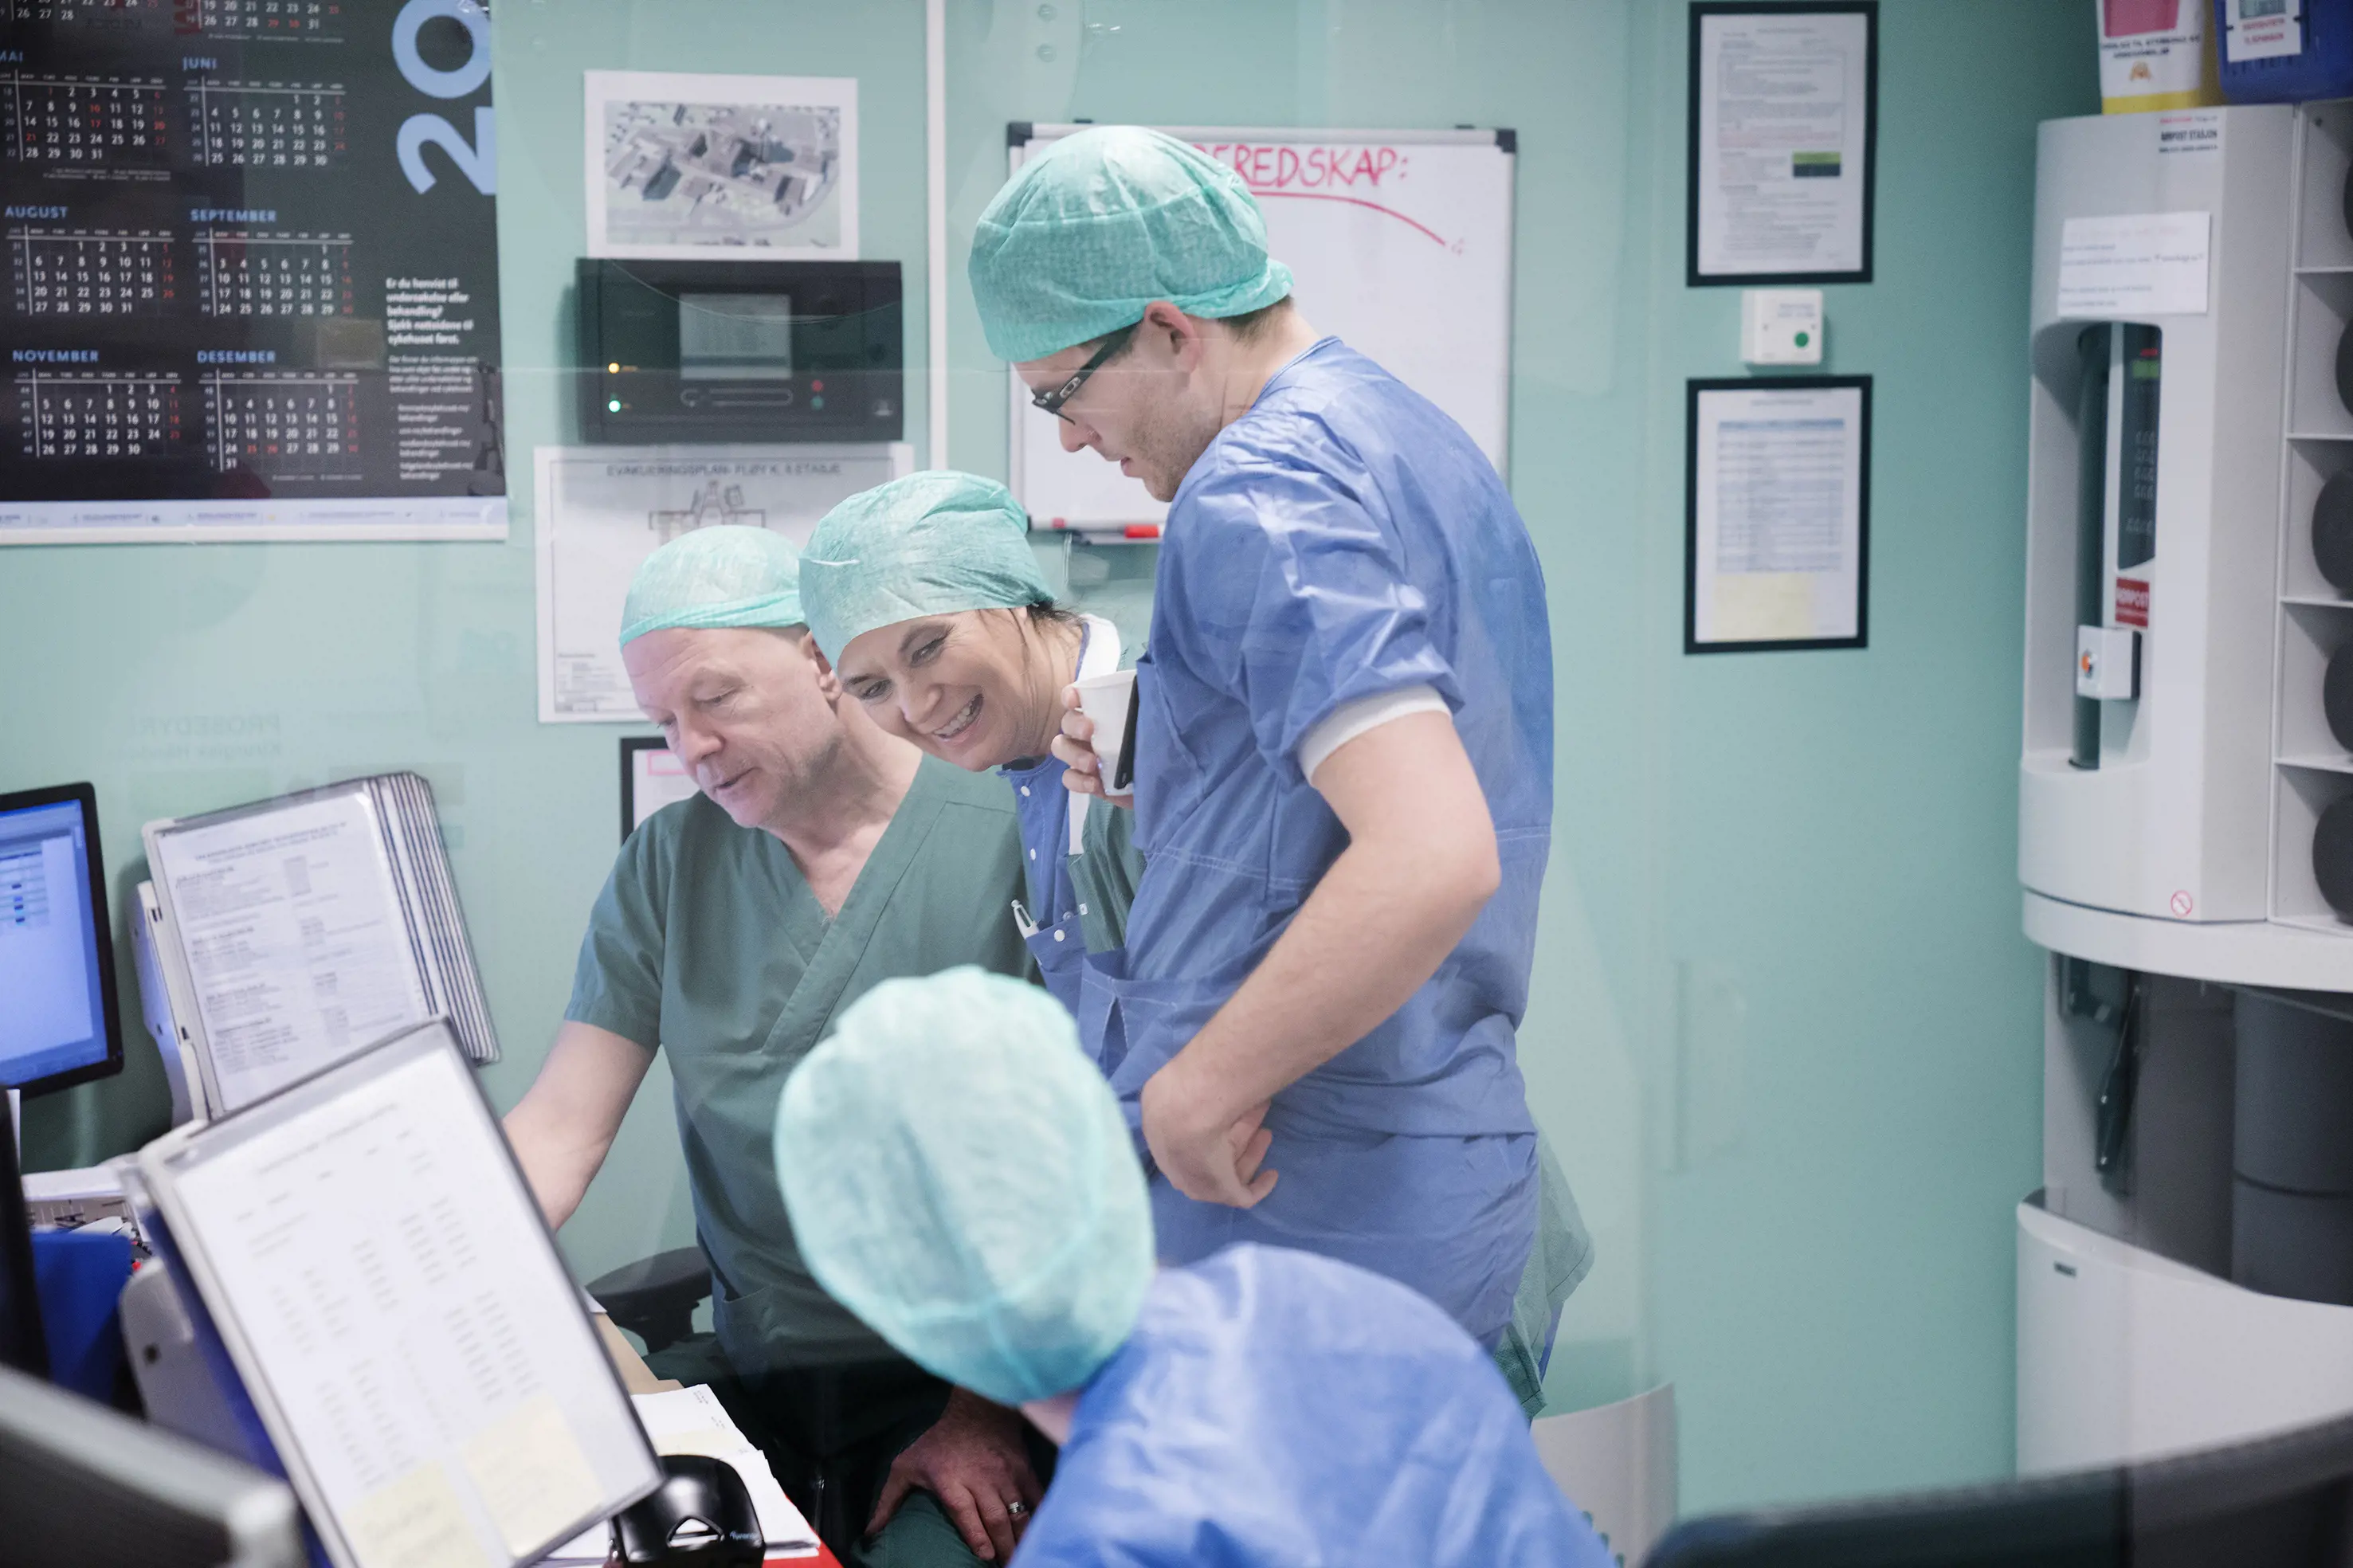 Fire pesoner i operasjonsklær som prater sammen